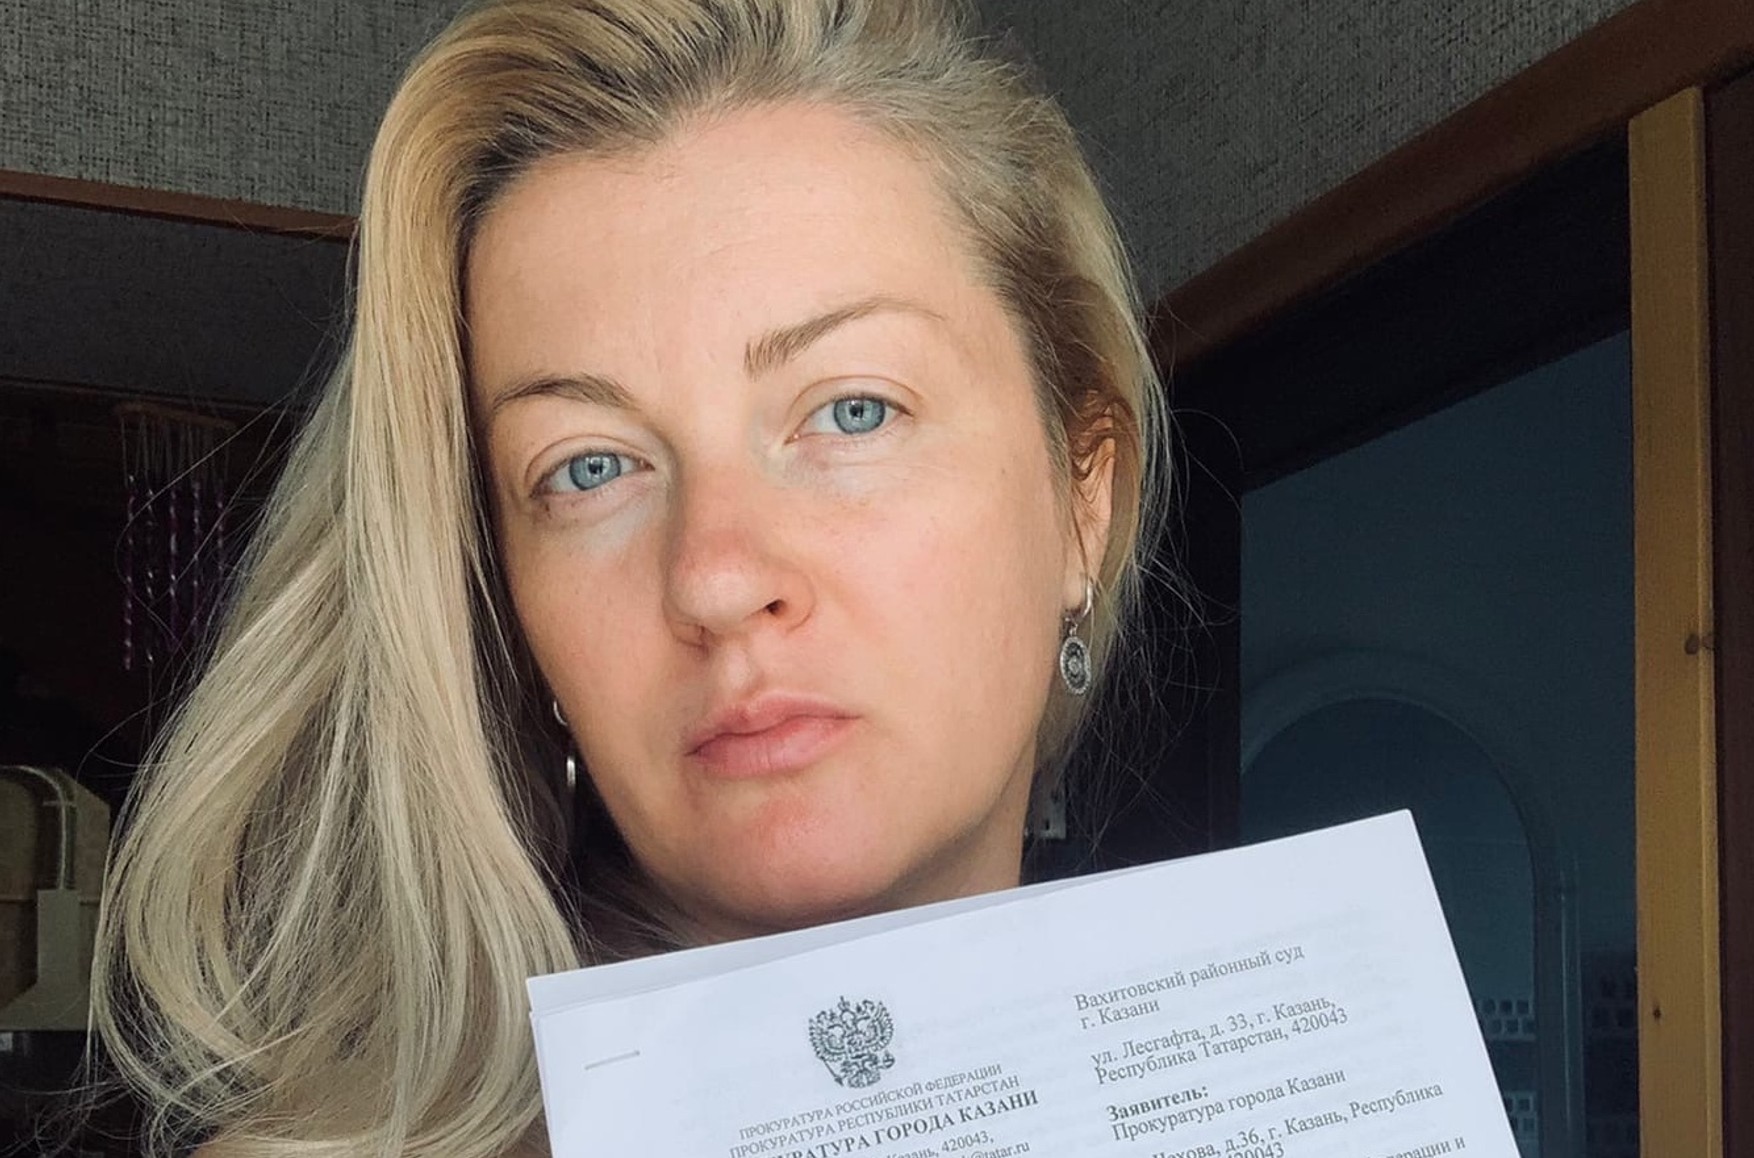 ЦВК анулював реєстрацію журналістки Sota як кандидата в депутати Держдуми через підтримку прихильників Навального